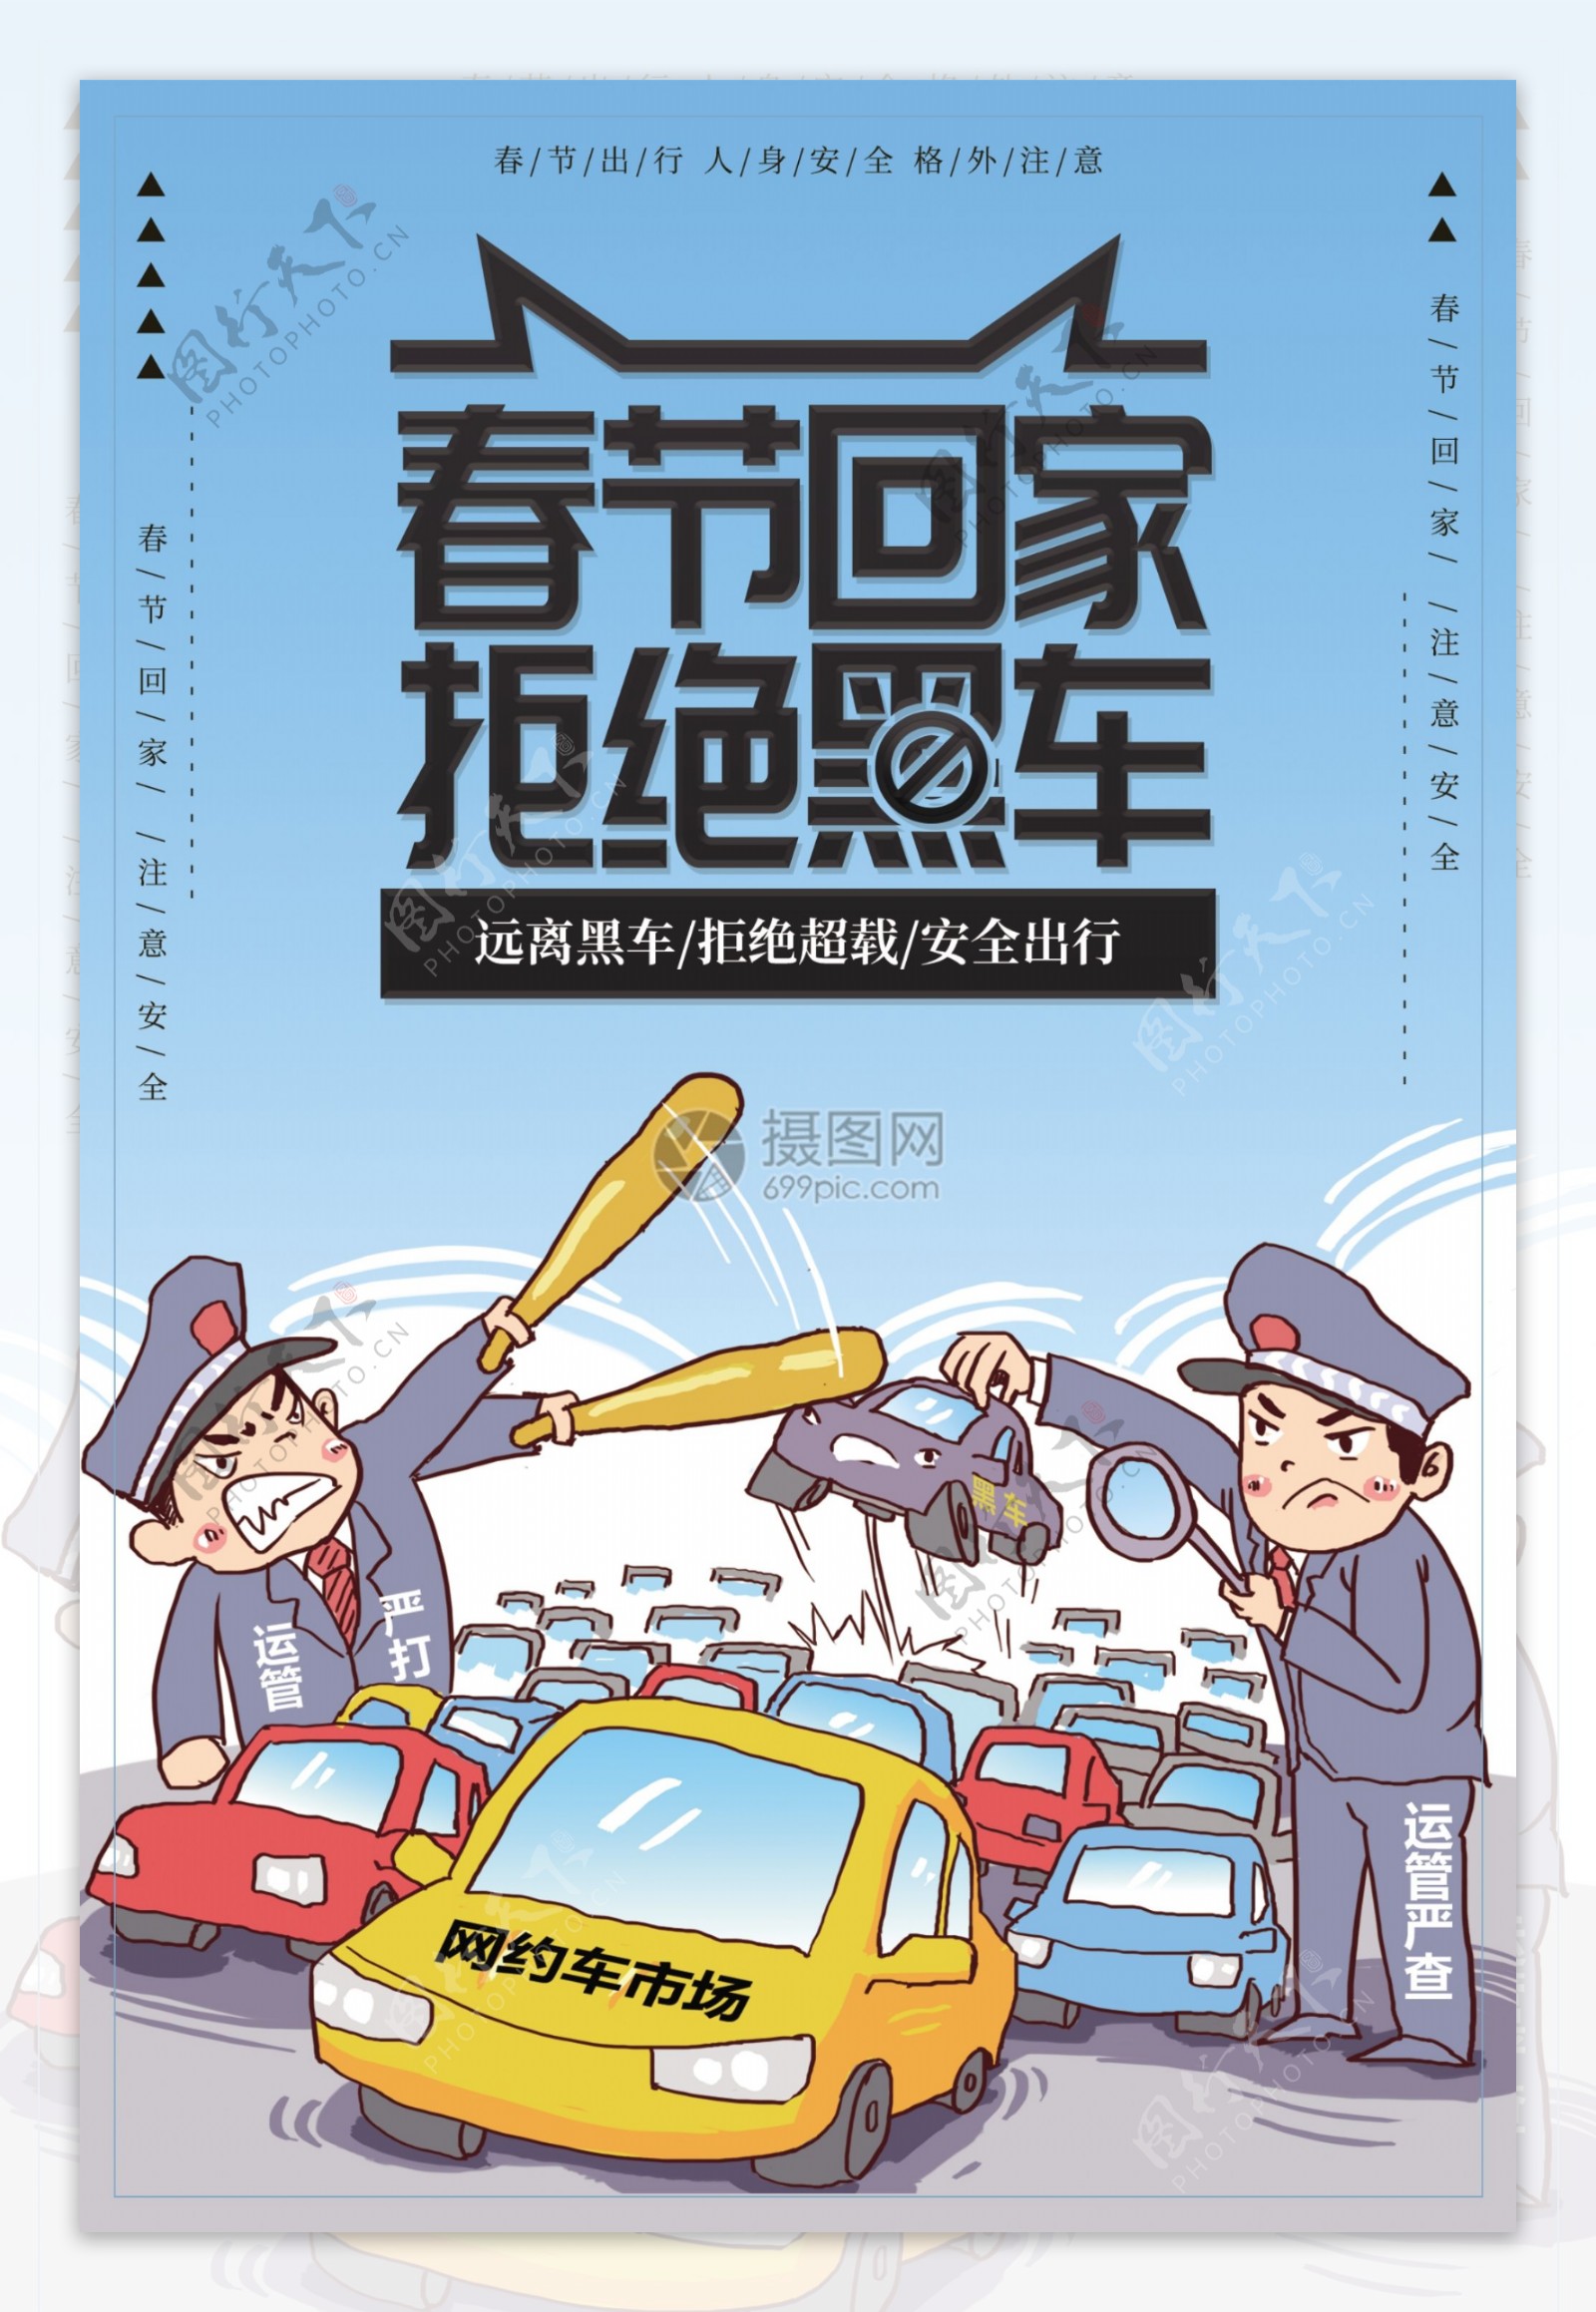 春节回家拒绝黑车公益宣传海报